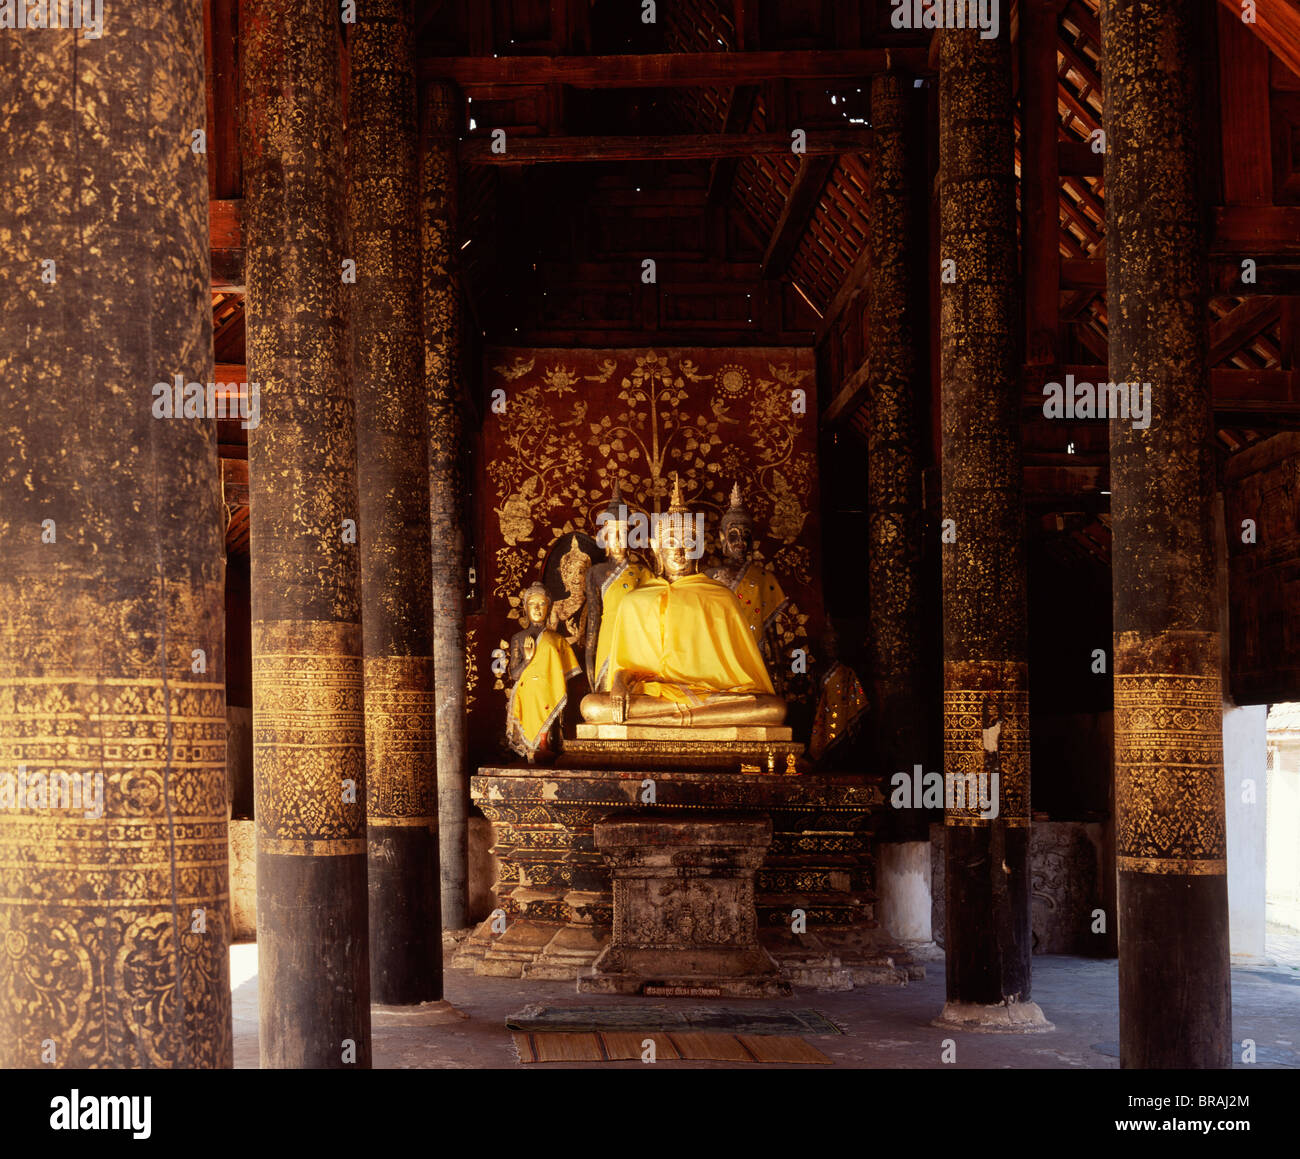 Intérieur de Wihan Nam Taem au Wat Phra That Luang, le plus vieux bâtiment en bois en Thaïlande, Lampang, Thaïlande, Asie du Sud-Est Banque D'Images